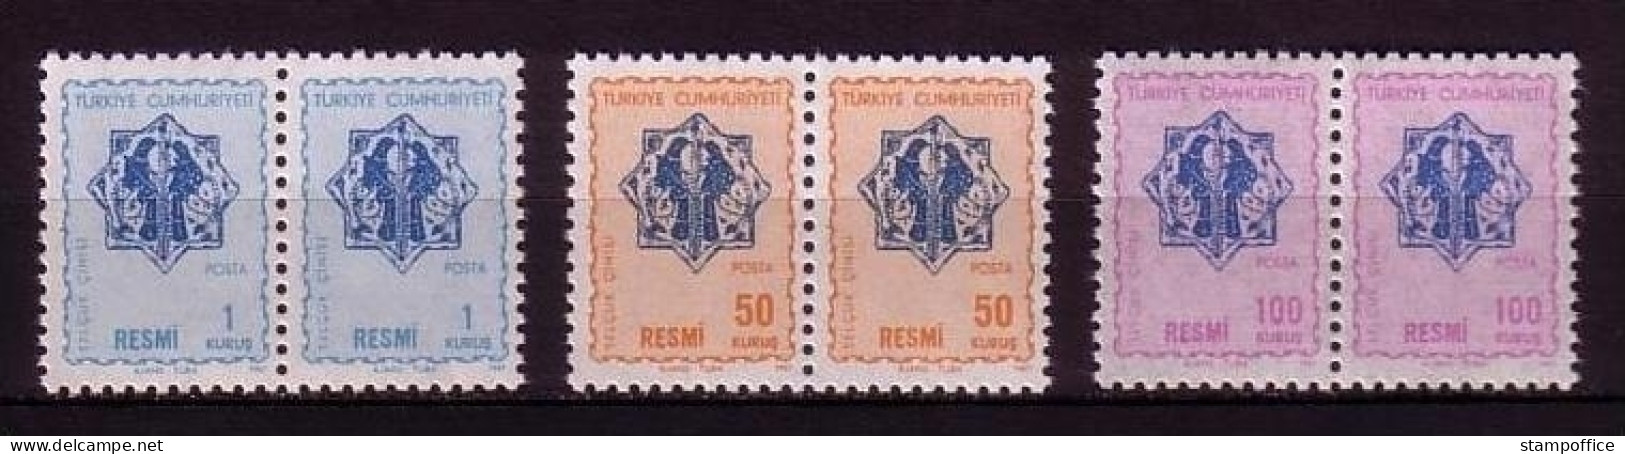 TÜRKEI DIENSTMARKEN MI-NR. 109-111 POSTFRISCH(MINT) Pärchen ORNAMENTE - Official Stamps